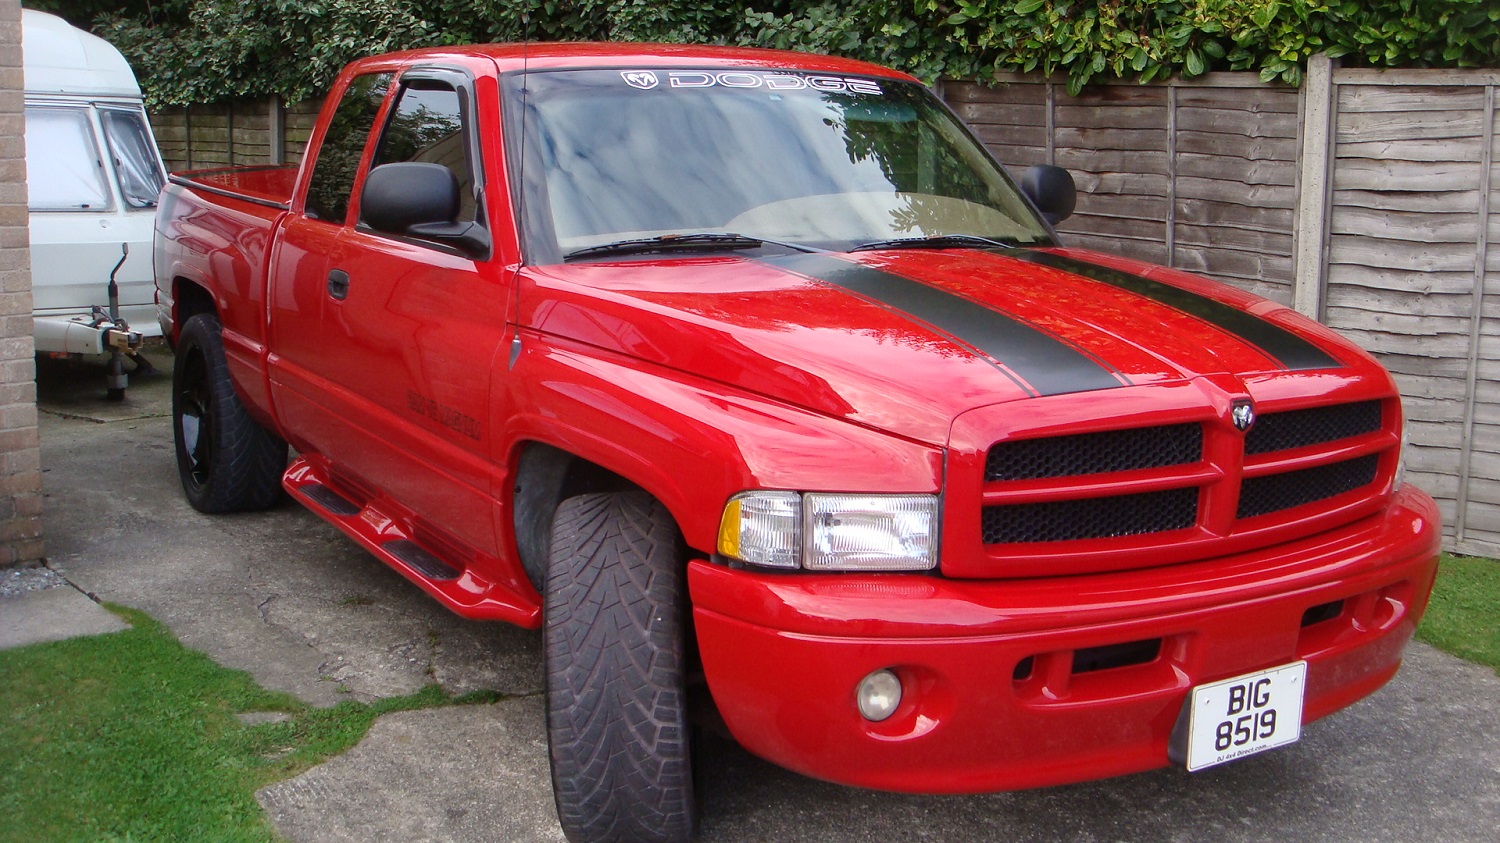 APR Bodyworks | Dodge Ram restoration | 1999 Dodge Ram | 1999 Dodge Ram truck | Dodge Ram 1999 | Dodge Ram 1500 | 1999 Dodge Ram 1500 | Mopar UK |